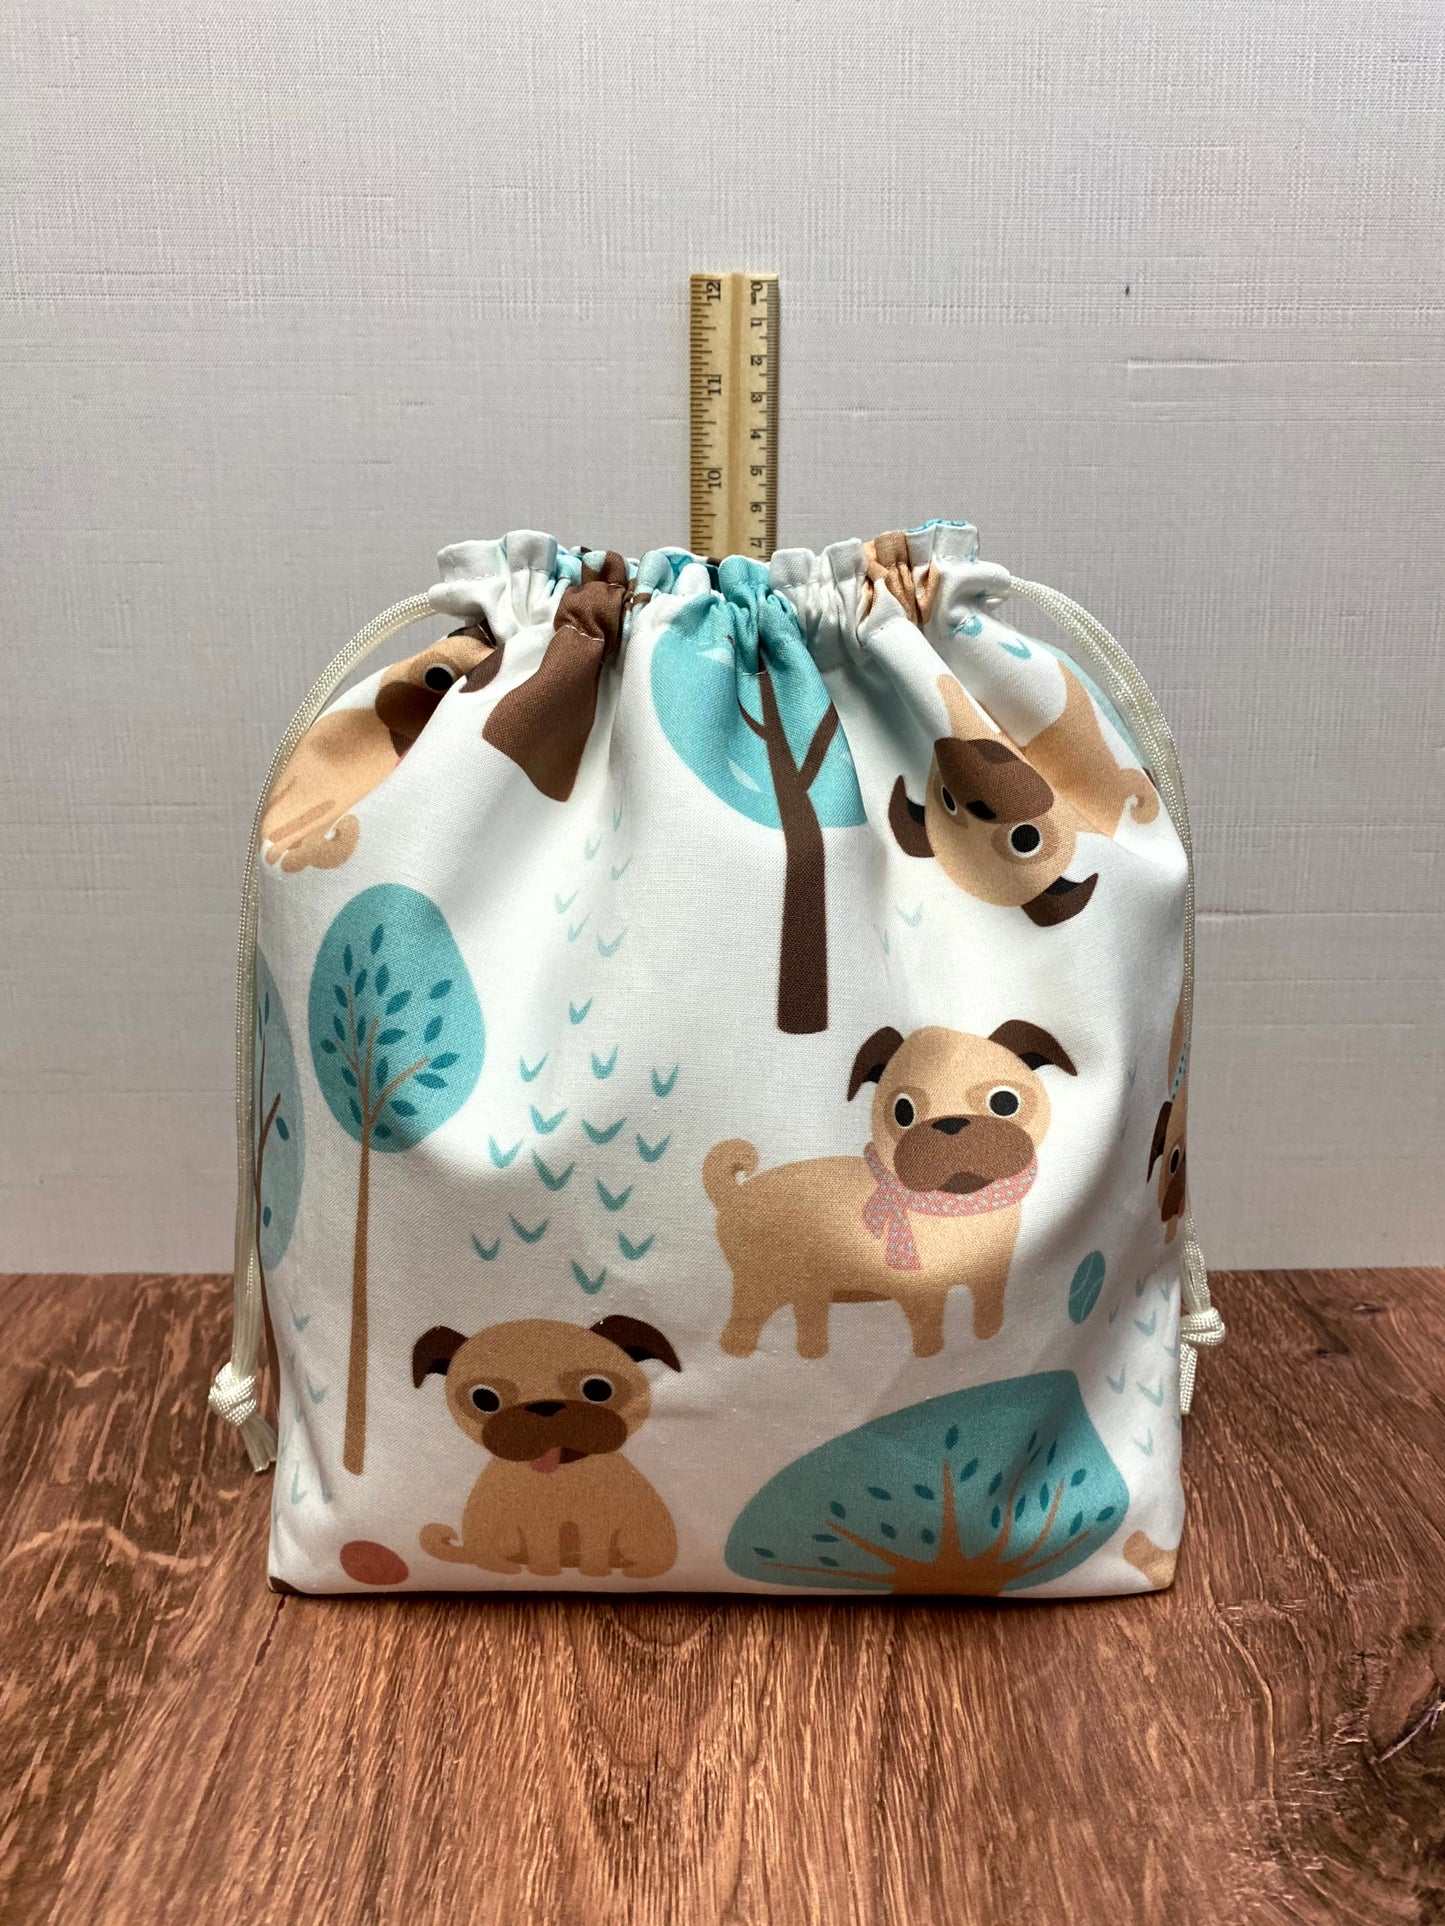 Pug Project Bag - Drawstring Bag – Crochet Bag - Knitting Bag - Cross Stitch Bag - Craft Bag - Bingo Bag - Dog